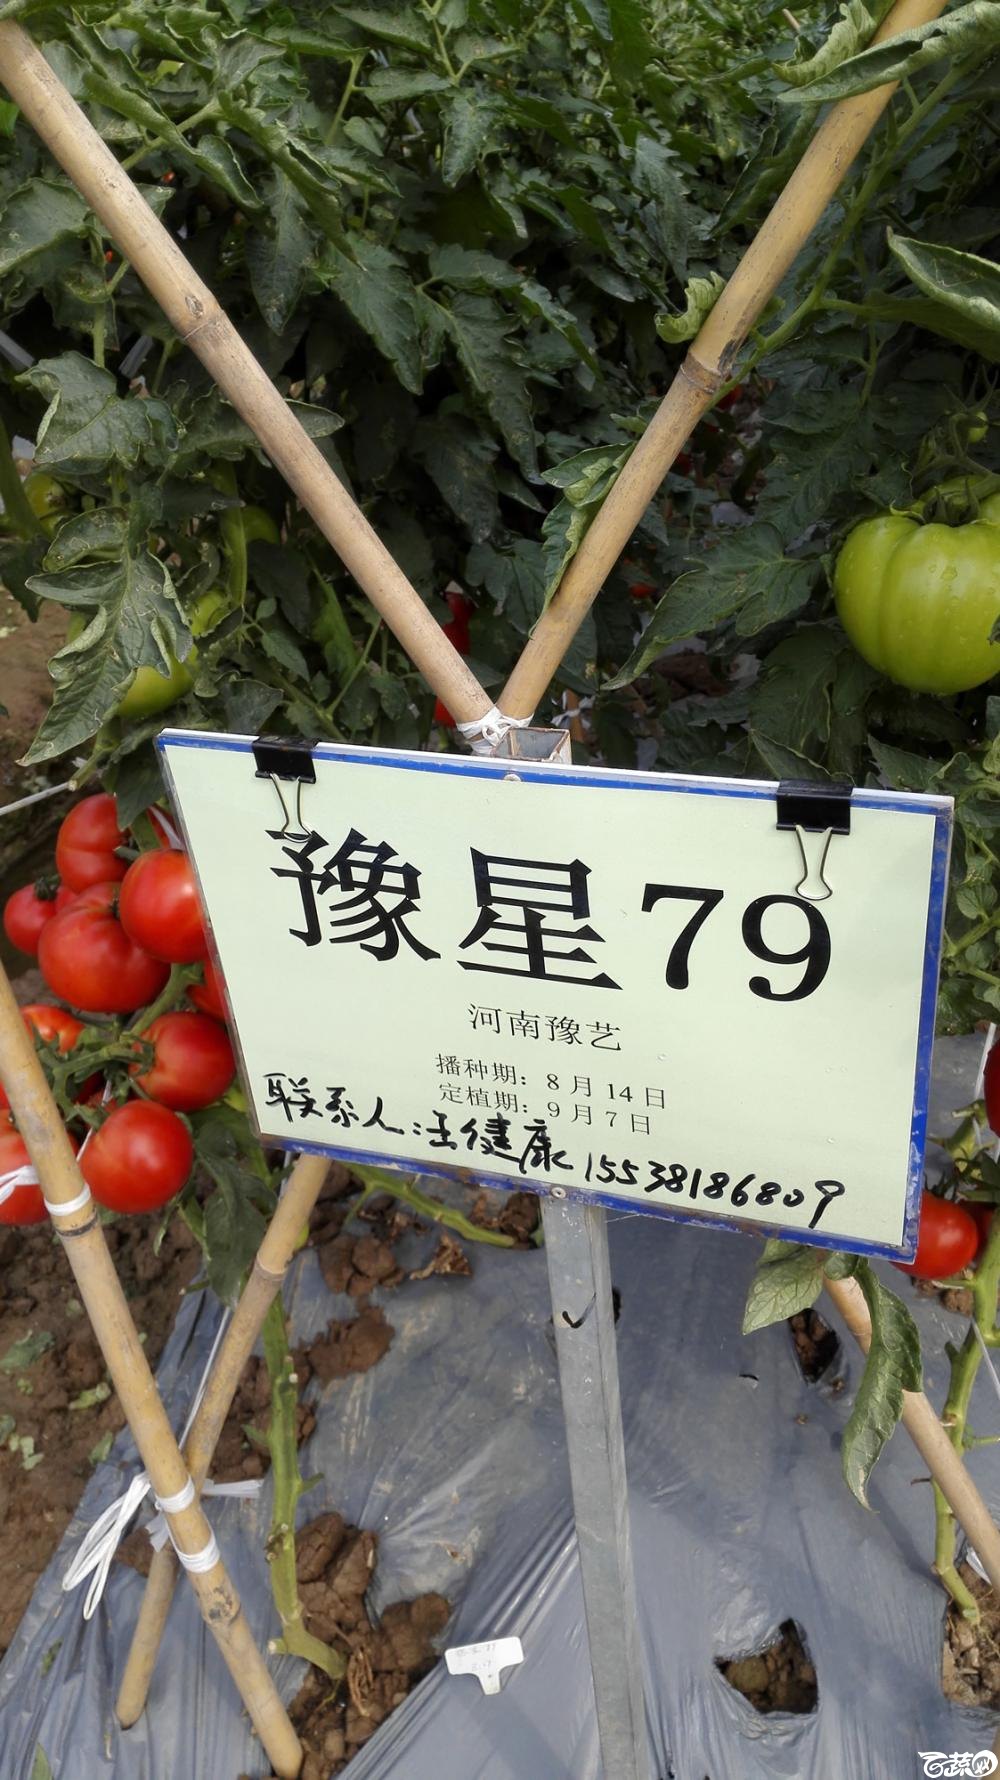 2014年12月8号中山蔬菜新品种展示会_番茄_031.jpg